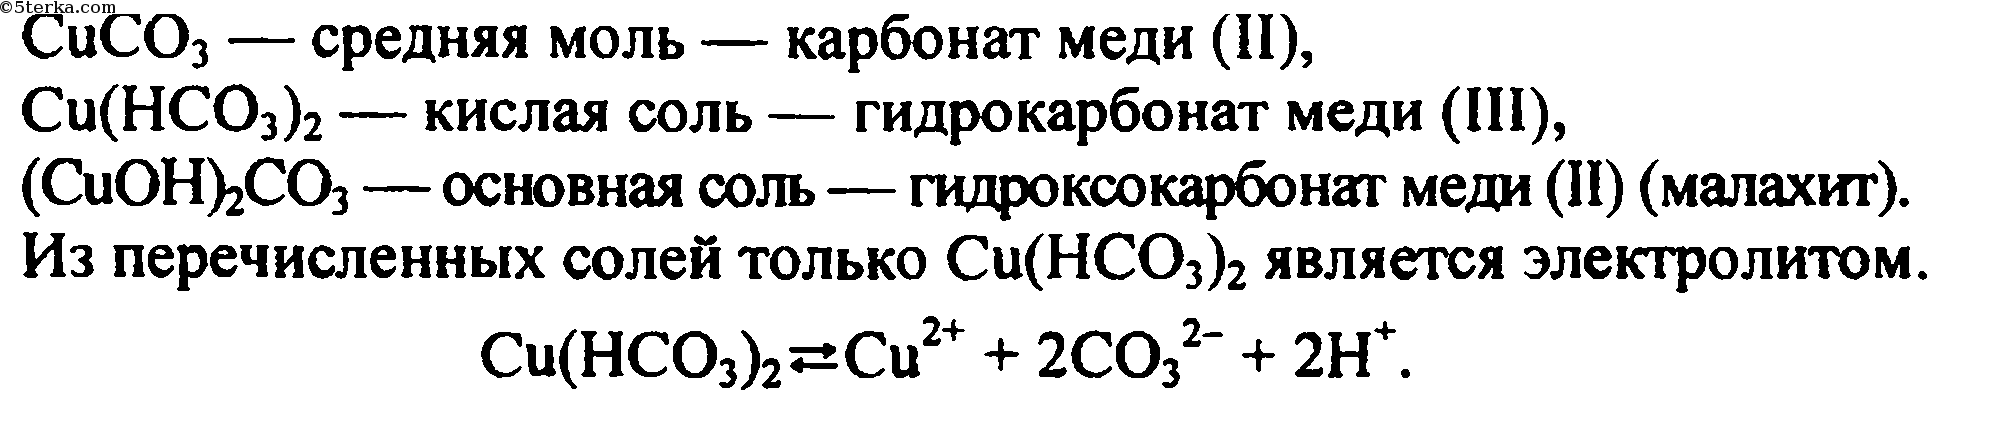 Гидрокарбонат натрия гидроксид меди 2. Гидроксокарбонат меди формула. Карбонат меди формула. Гидроксокарбонат меди II формула. Гидрокарбонат меди 2.